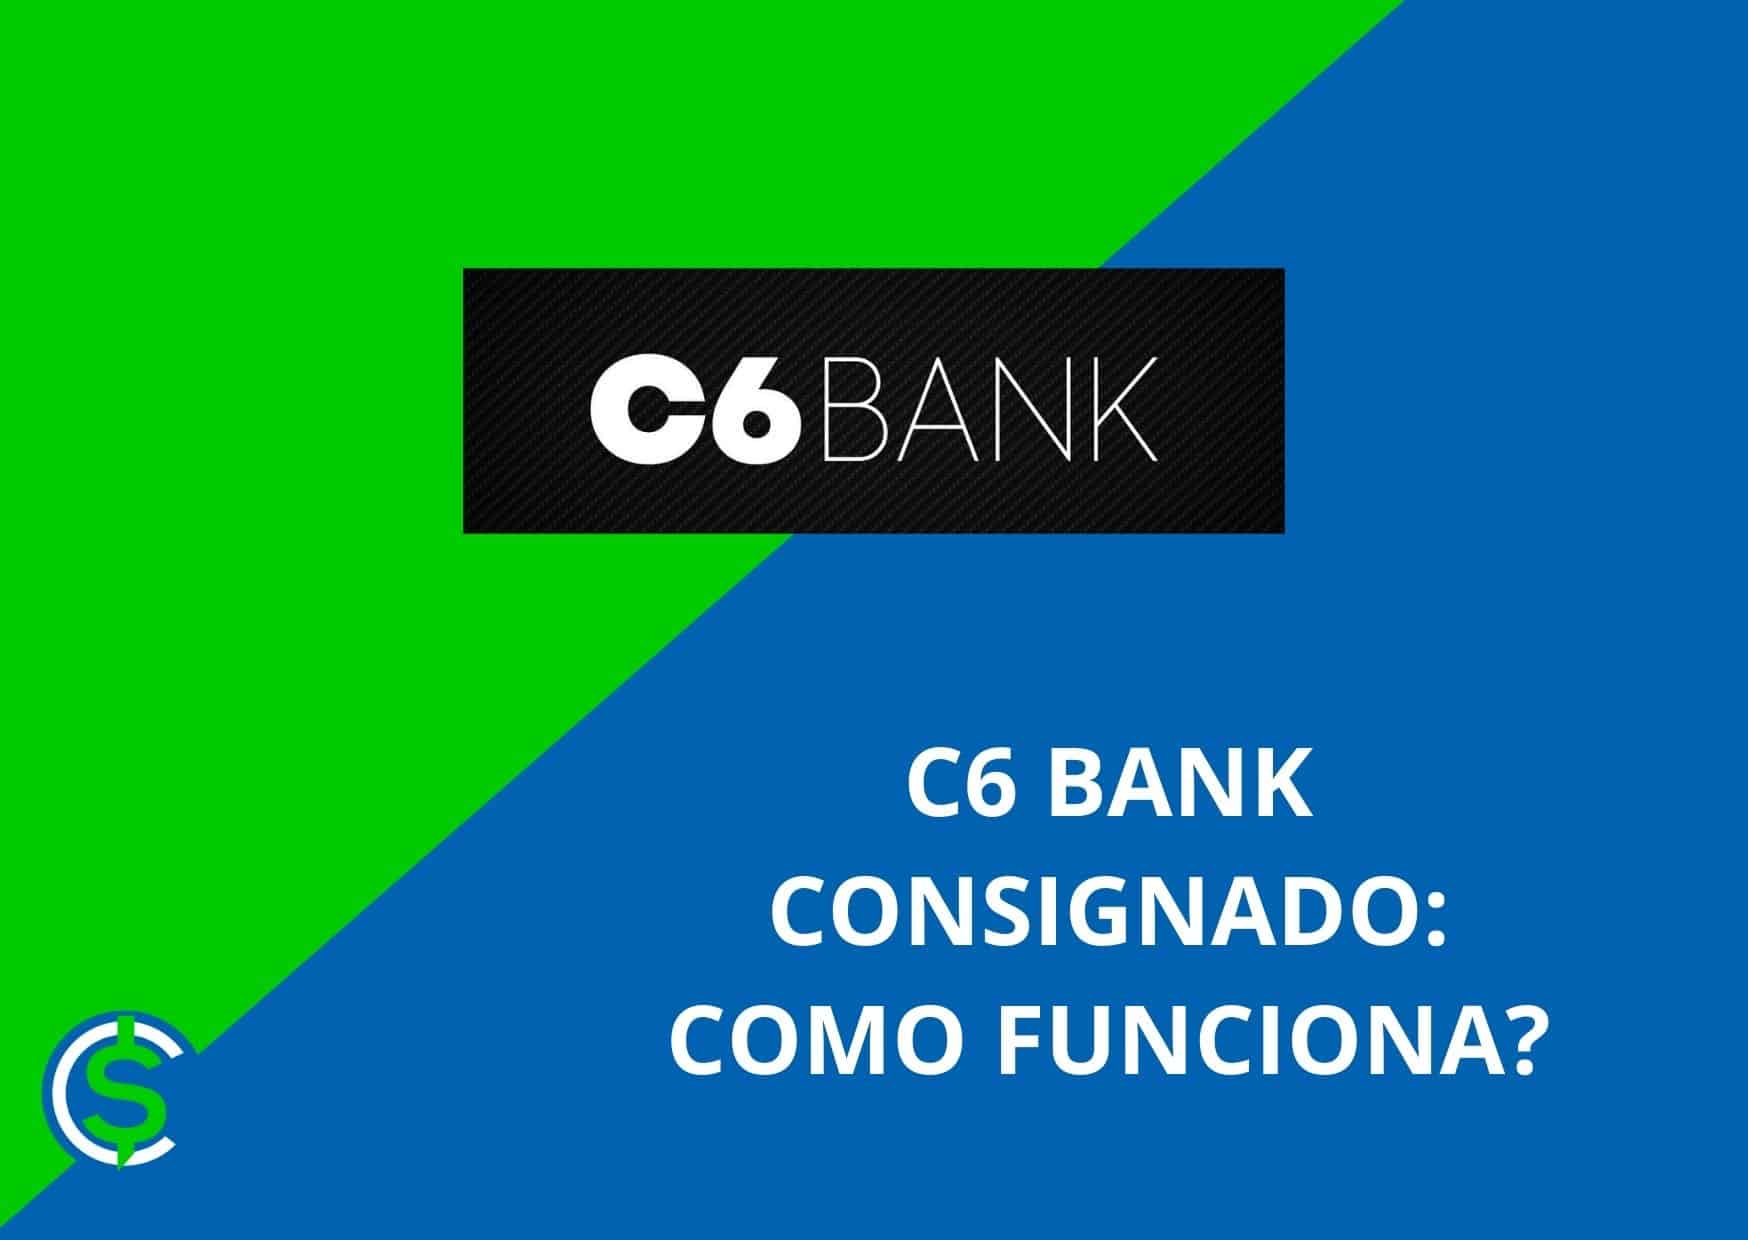 C6 Bank consignado